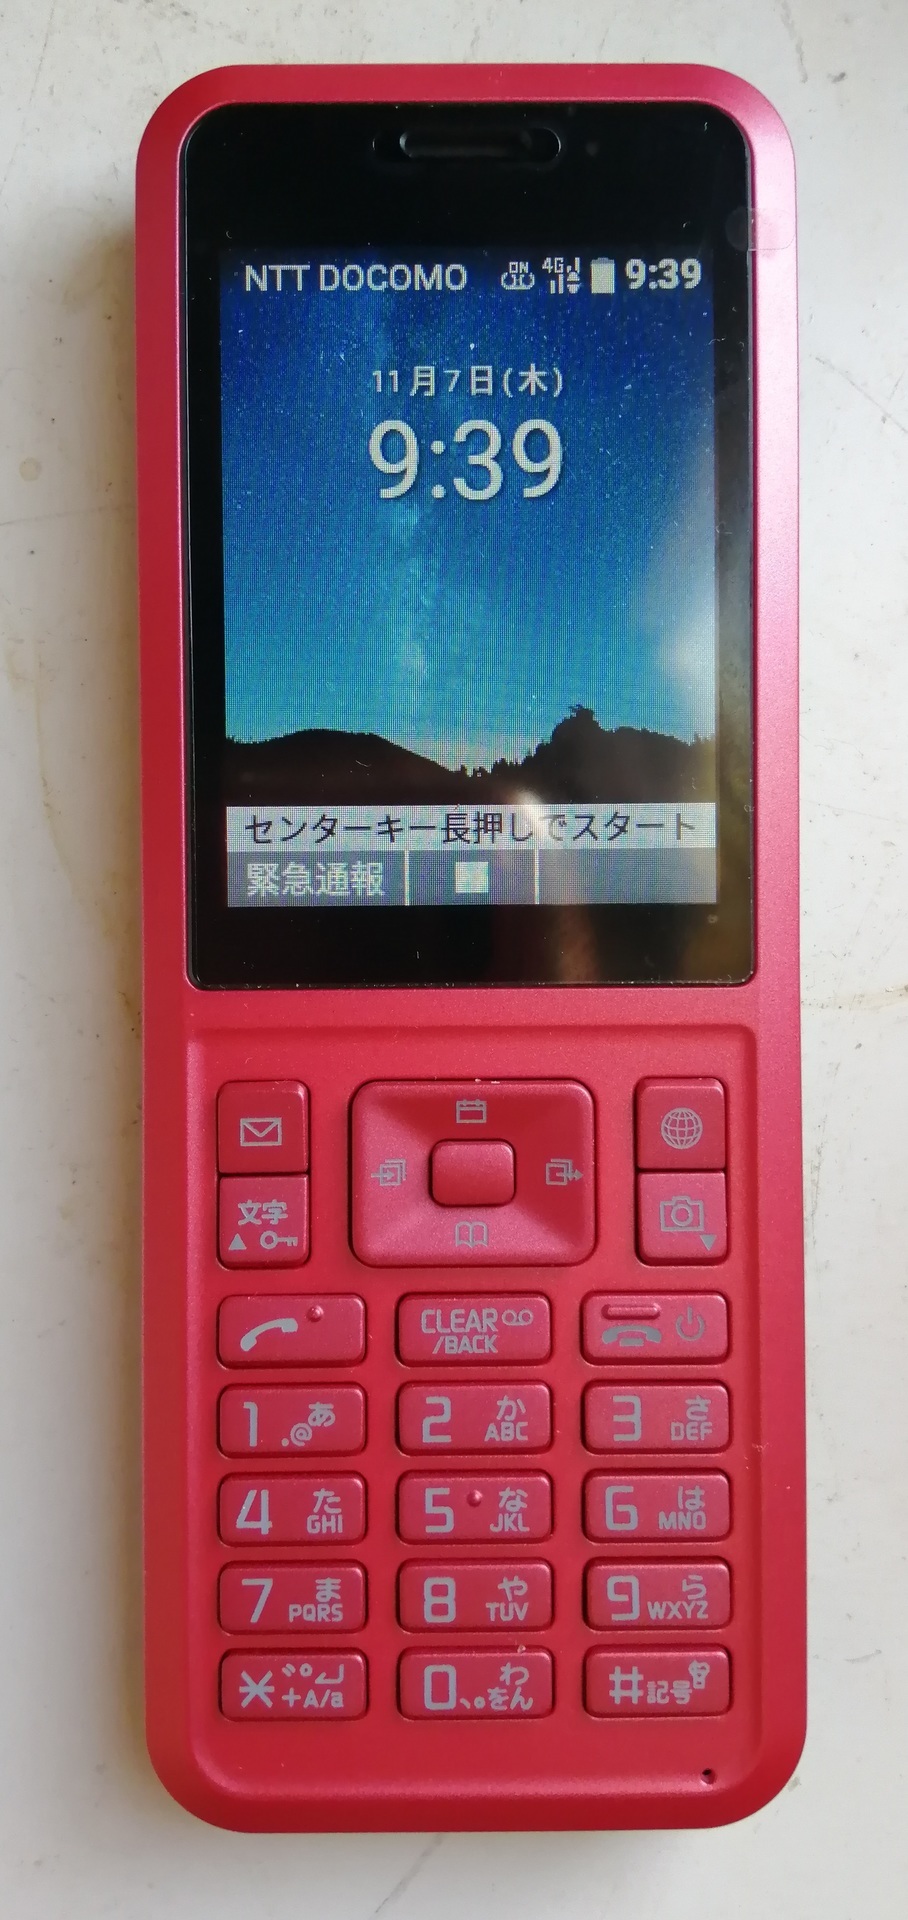 SoftBankのプリペイド携帯『シンプルスタイル』 月額基本料金0円が凄 